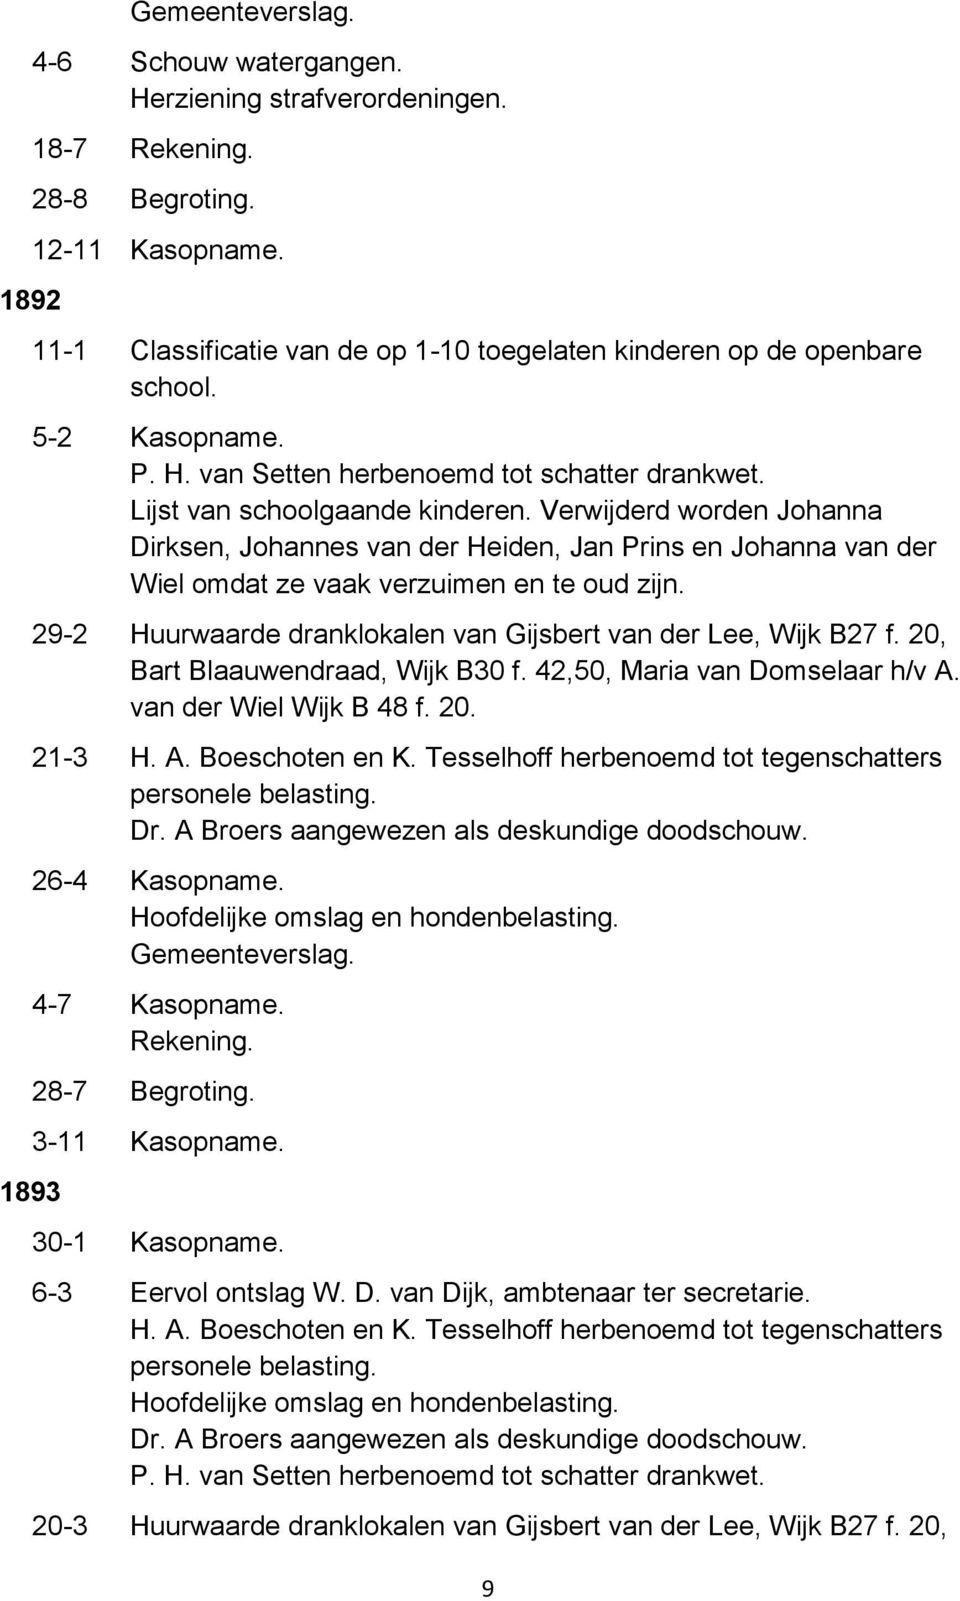 29-2 Huurwaarde dranklokalen van Gijsbert van der Lee, Wijk B27 f. 20, Bart Blaauwendraad, Wijk B30 f. 42,50, Maria van Domselaar h/v A. van der Wiel Wijk B 48 f. 20. 21-3 H. A. Boeschoten en K.